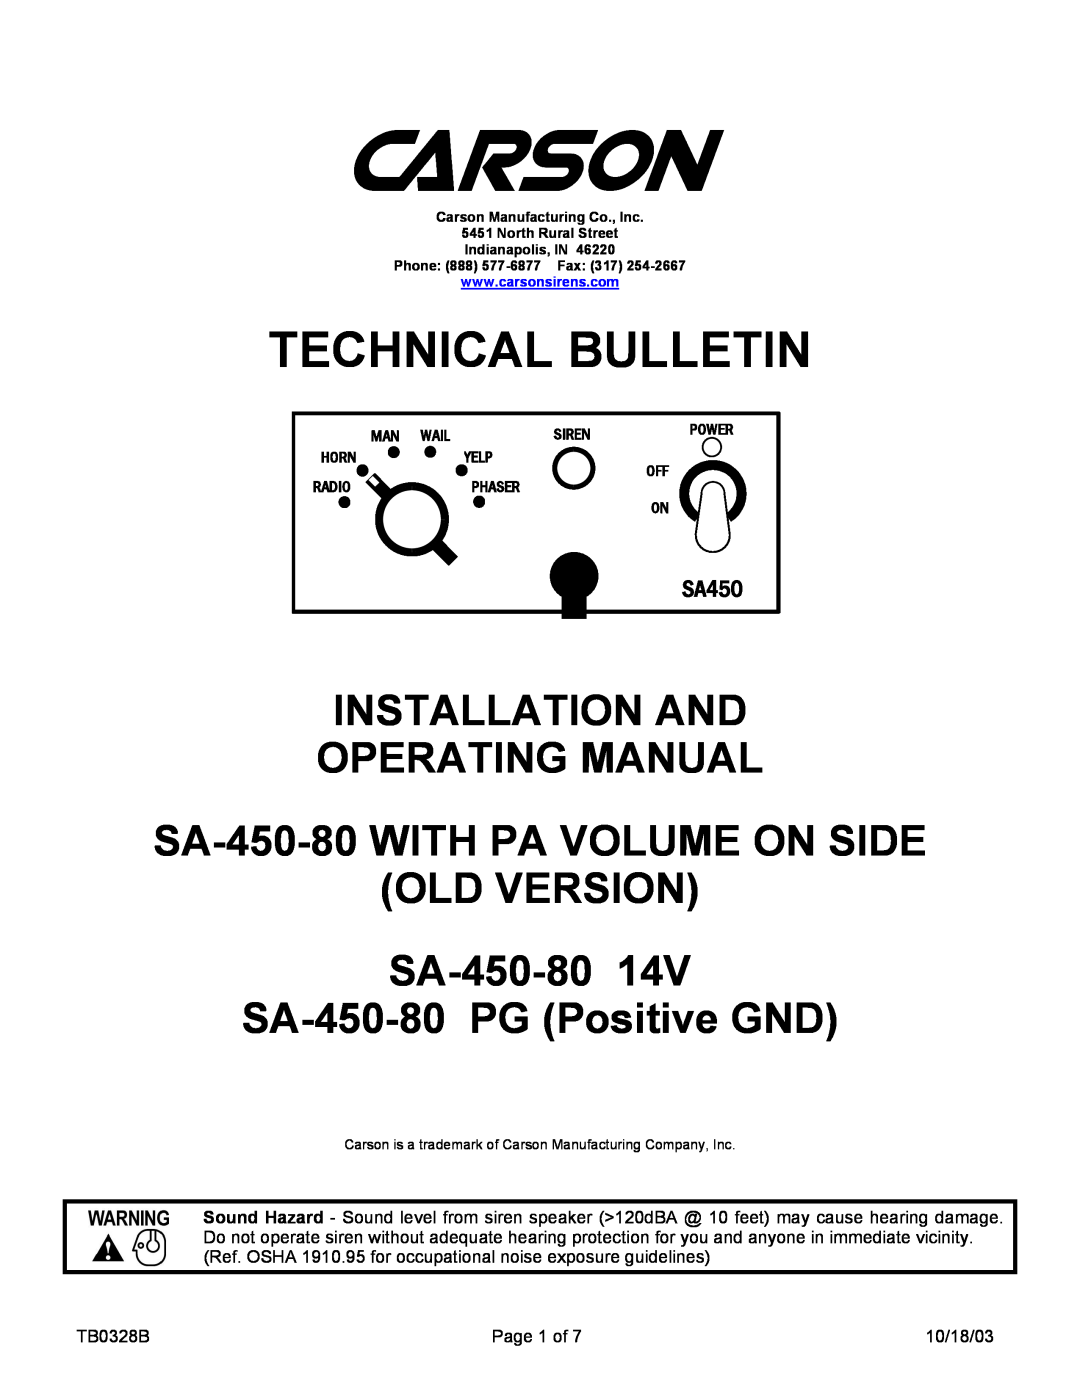 Carson SA-450-80 14V manual SA450, Technical Bulletin, Installation And Operating Manual 